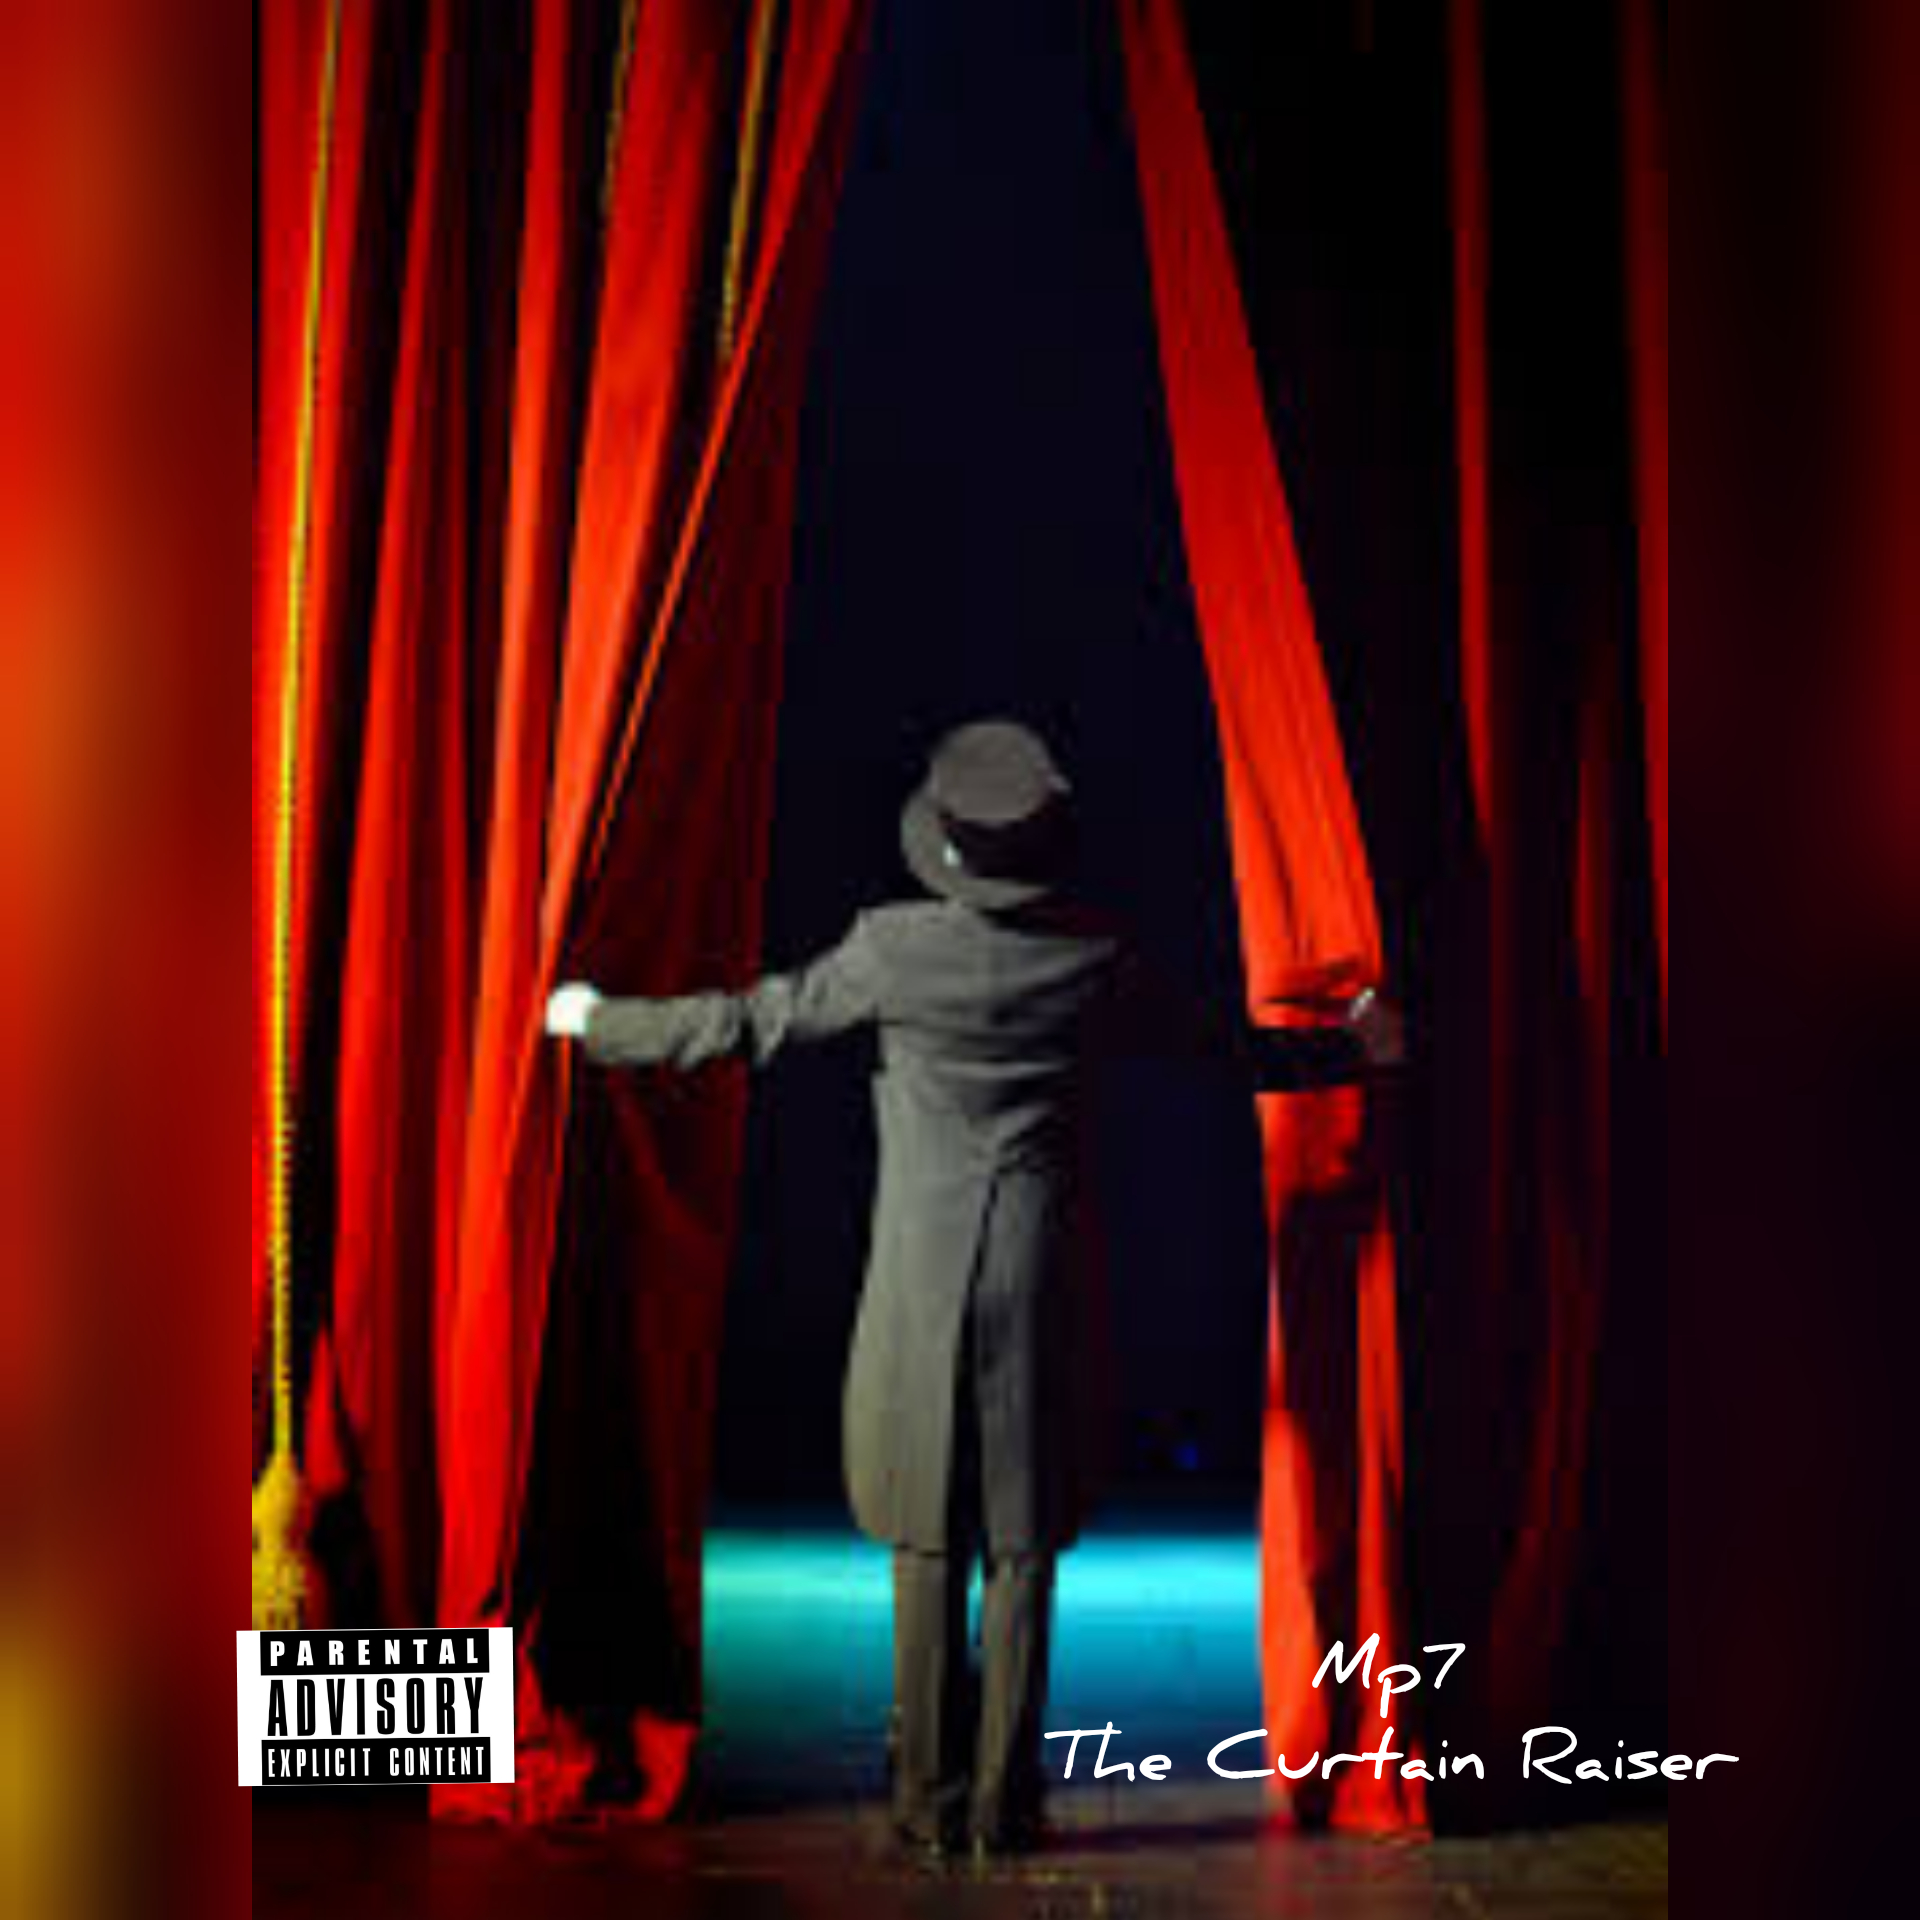 The Curtain Raiser by MP7 | Album